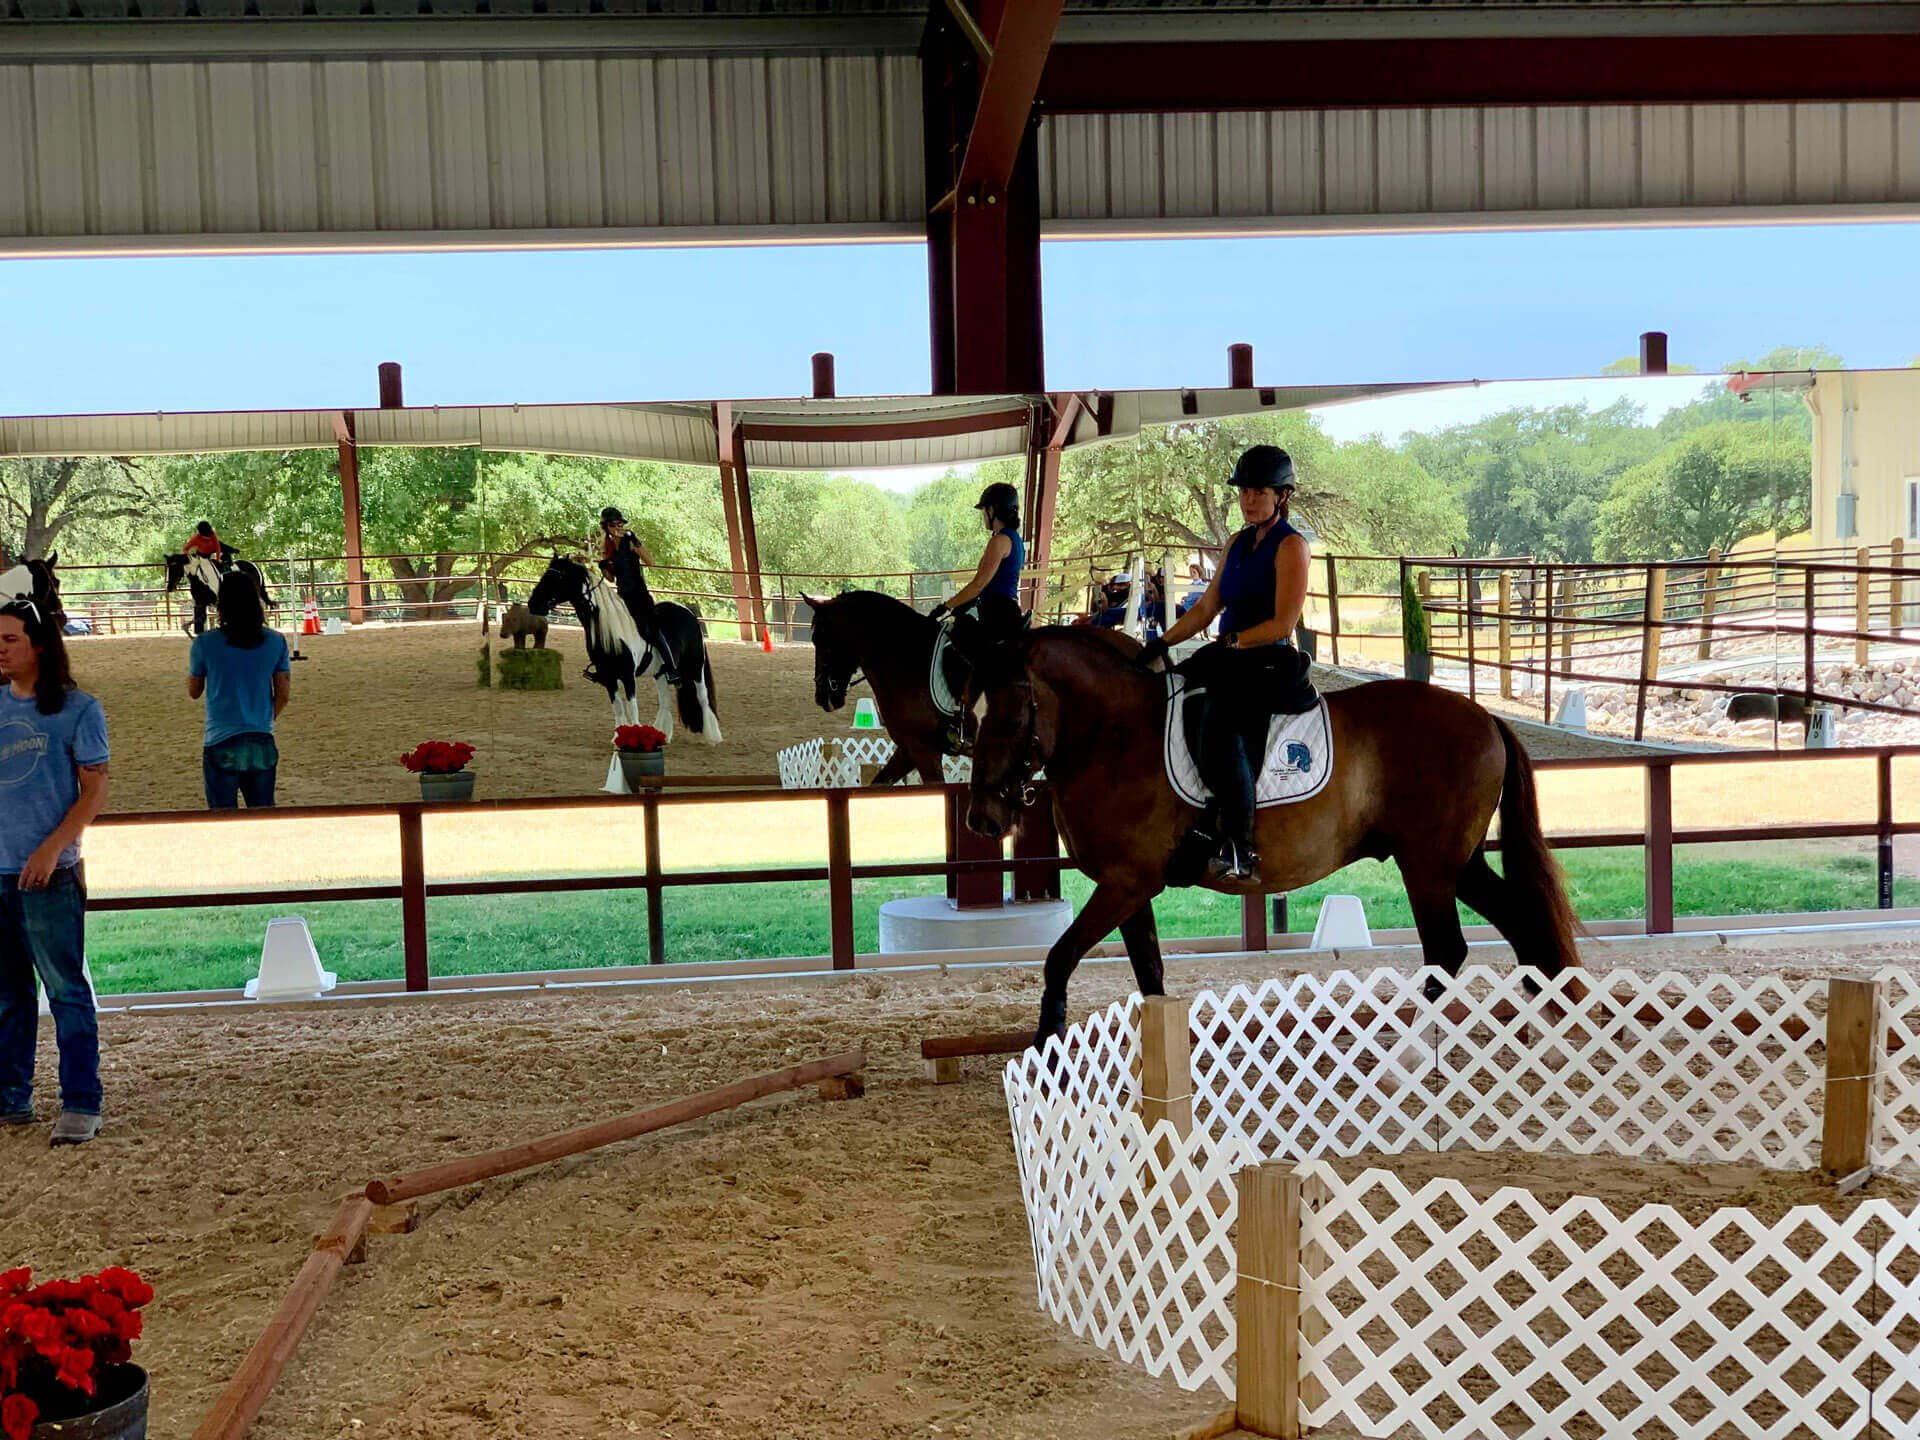 Clinic Event at Fair Oaks Equestrian Center, Fair Oaks Ranch near San Antonio, Texas